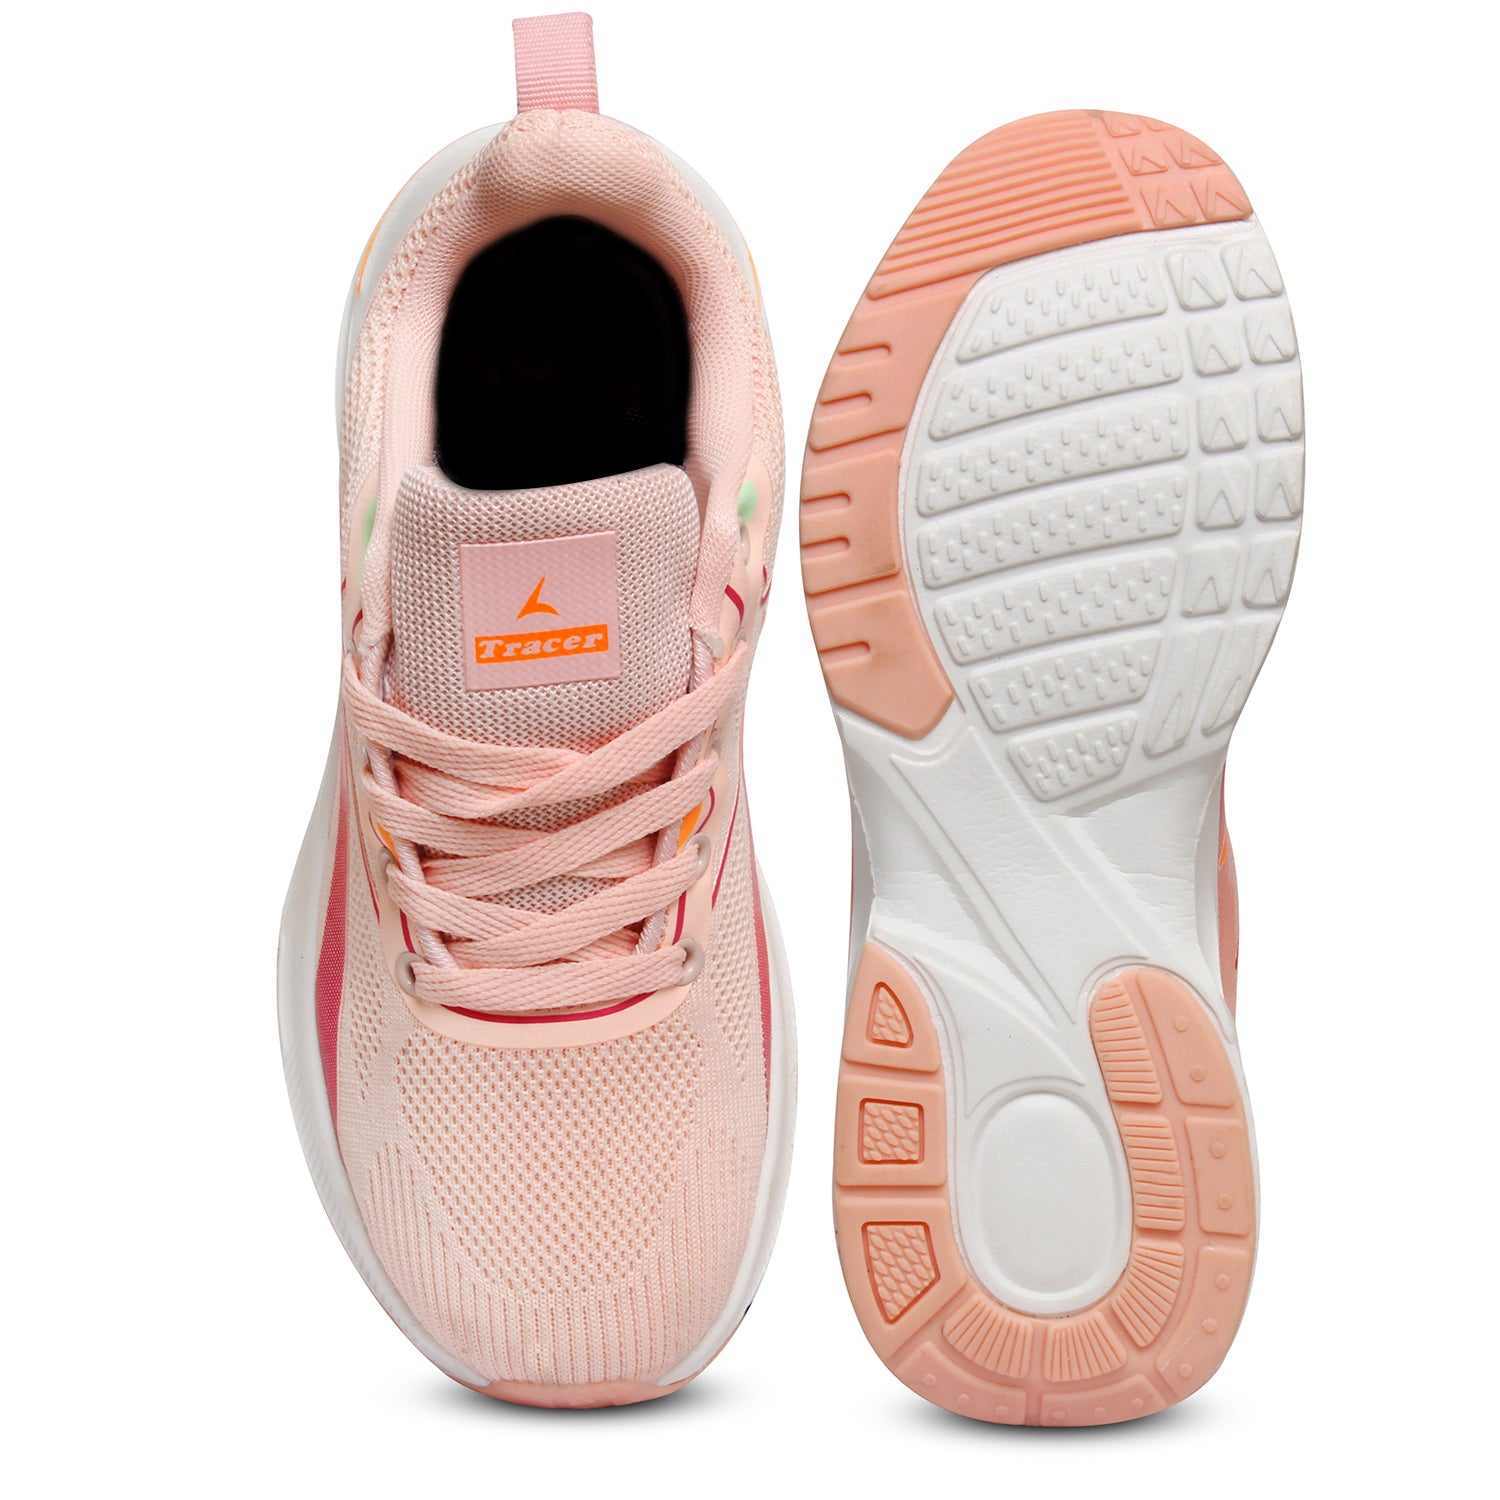 Women's Sneakers Pink